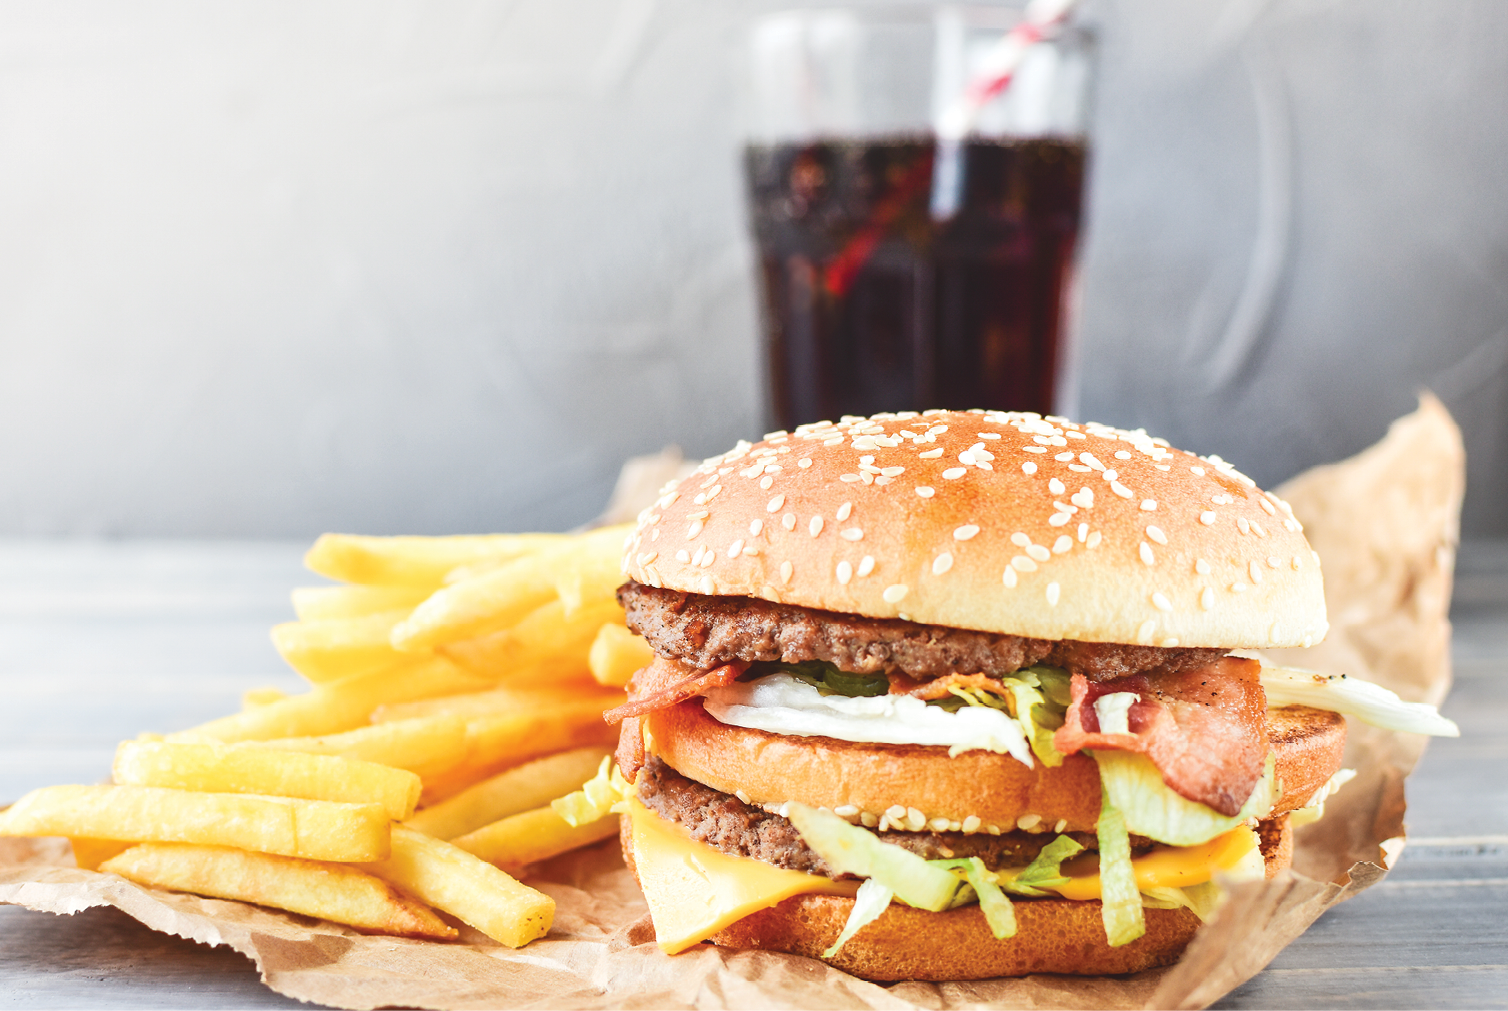 Fastfood Hamburger fries soda